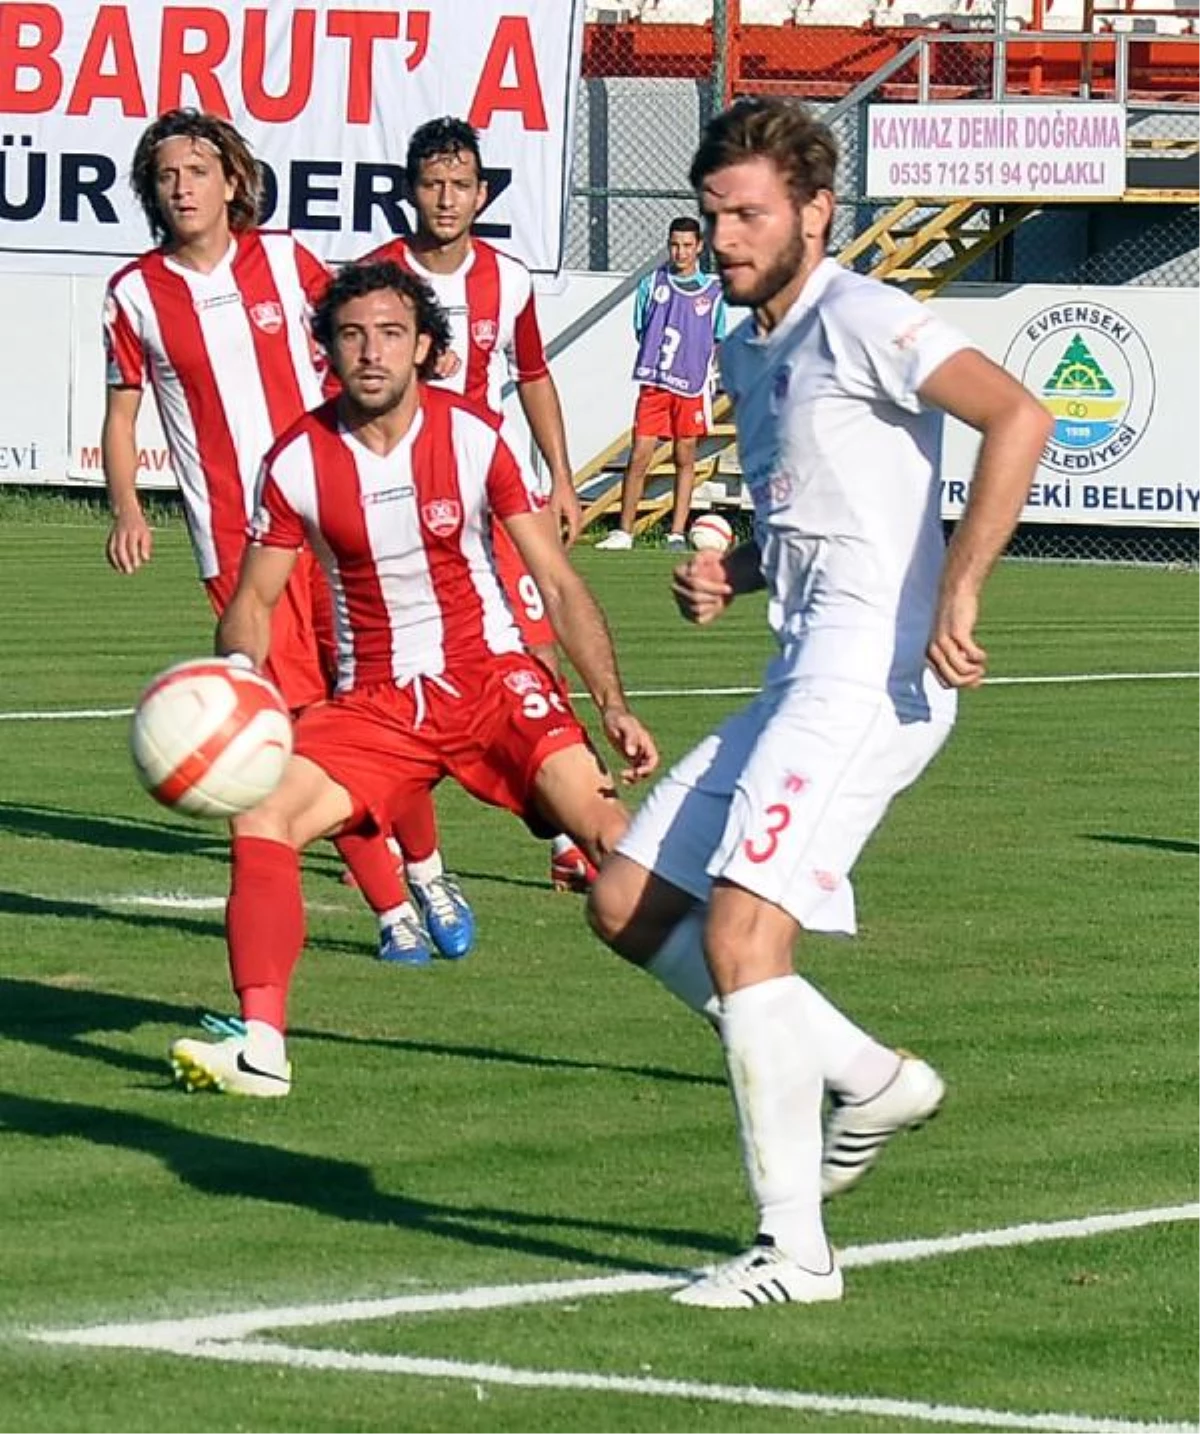 Manavgat Evrenseki-Sancaktepe Belediyespor: 2-2